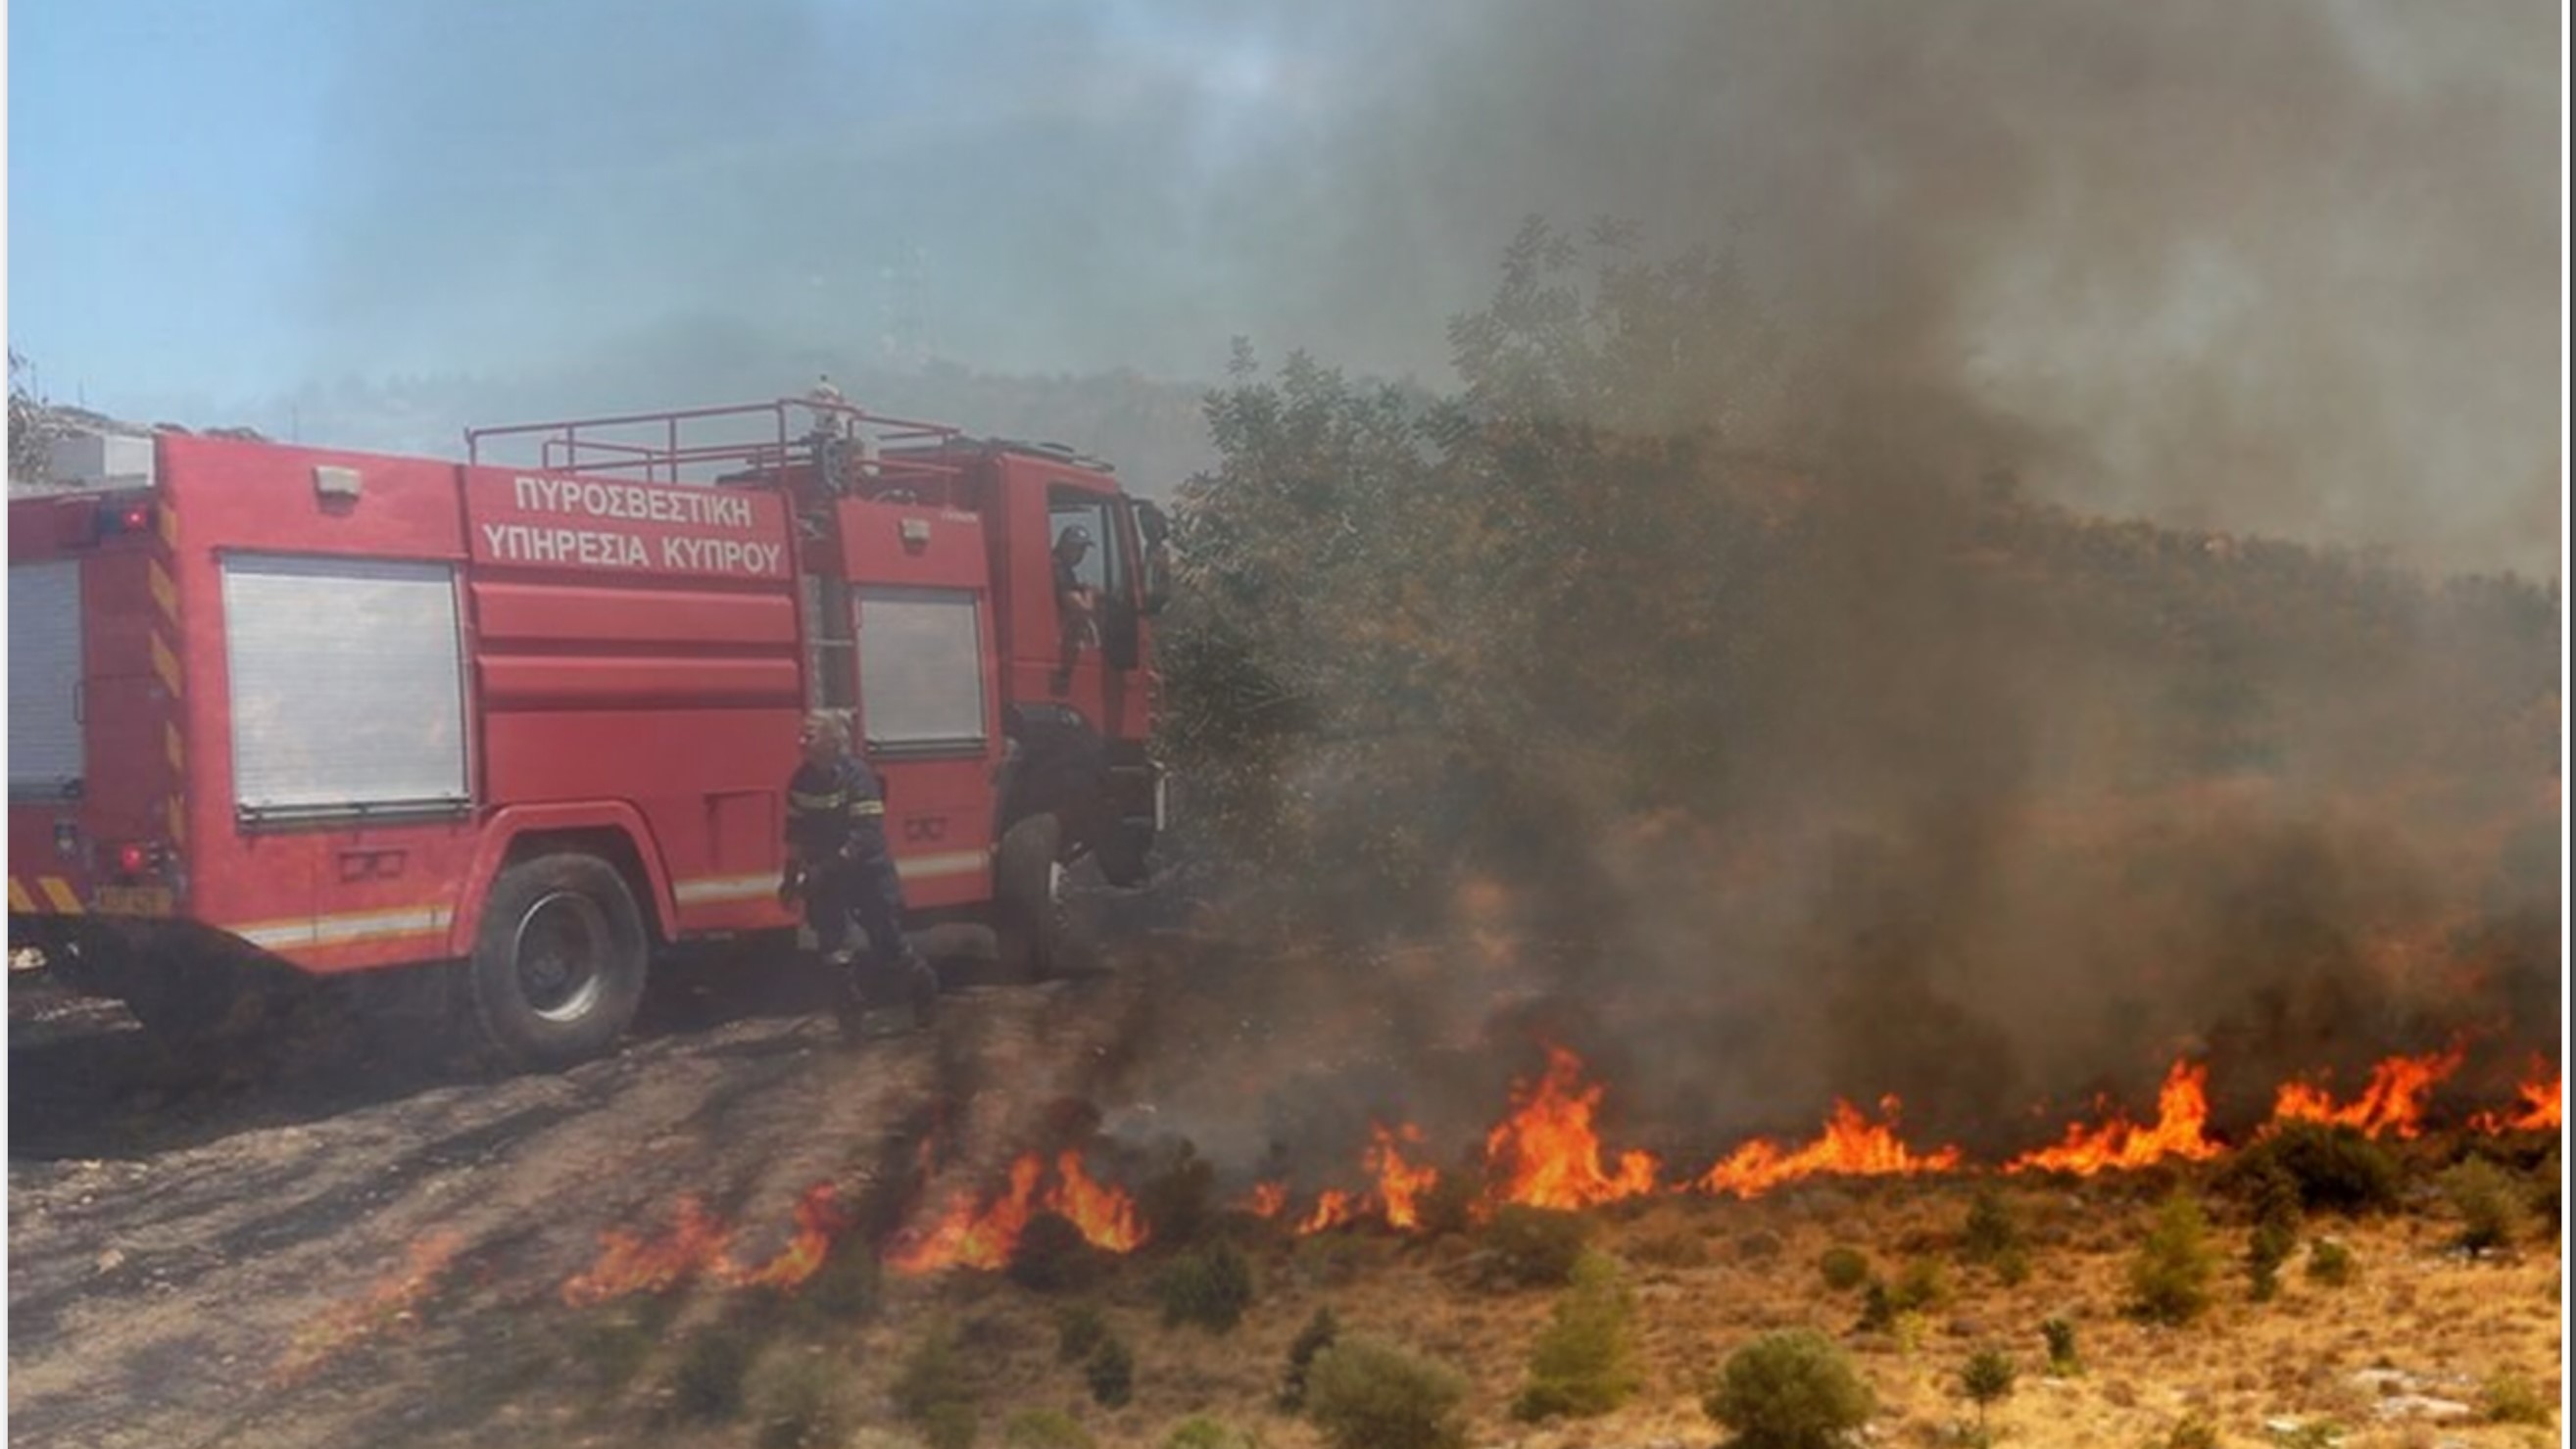 Πάφος: Σε δέκα πυρκαγιές στην Επαρχία επέδραμε η Πυροσβεστική